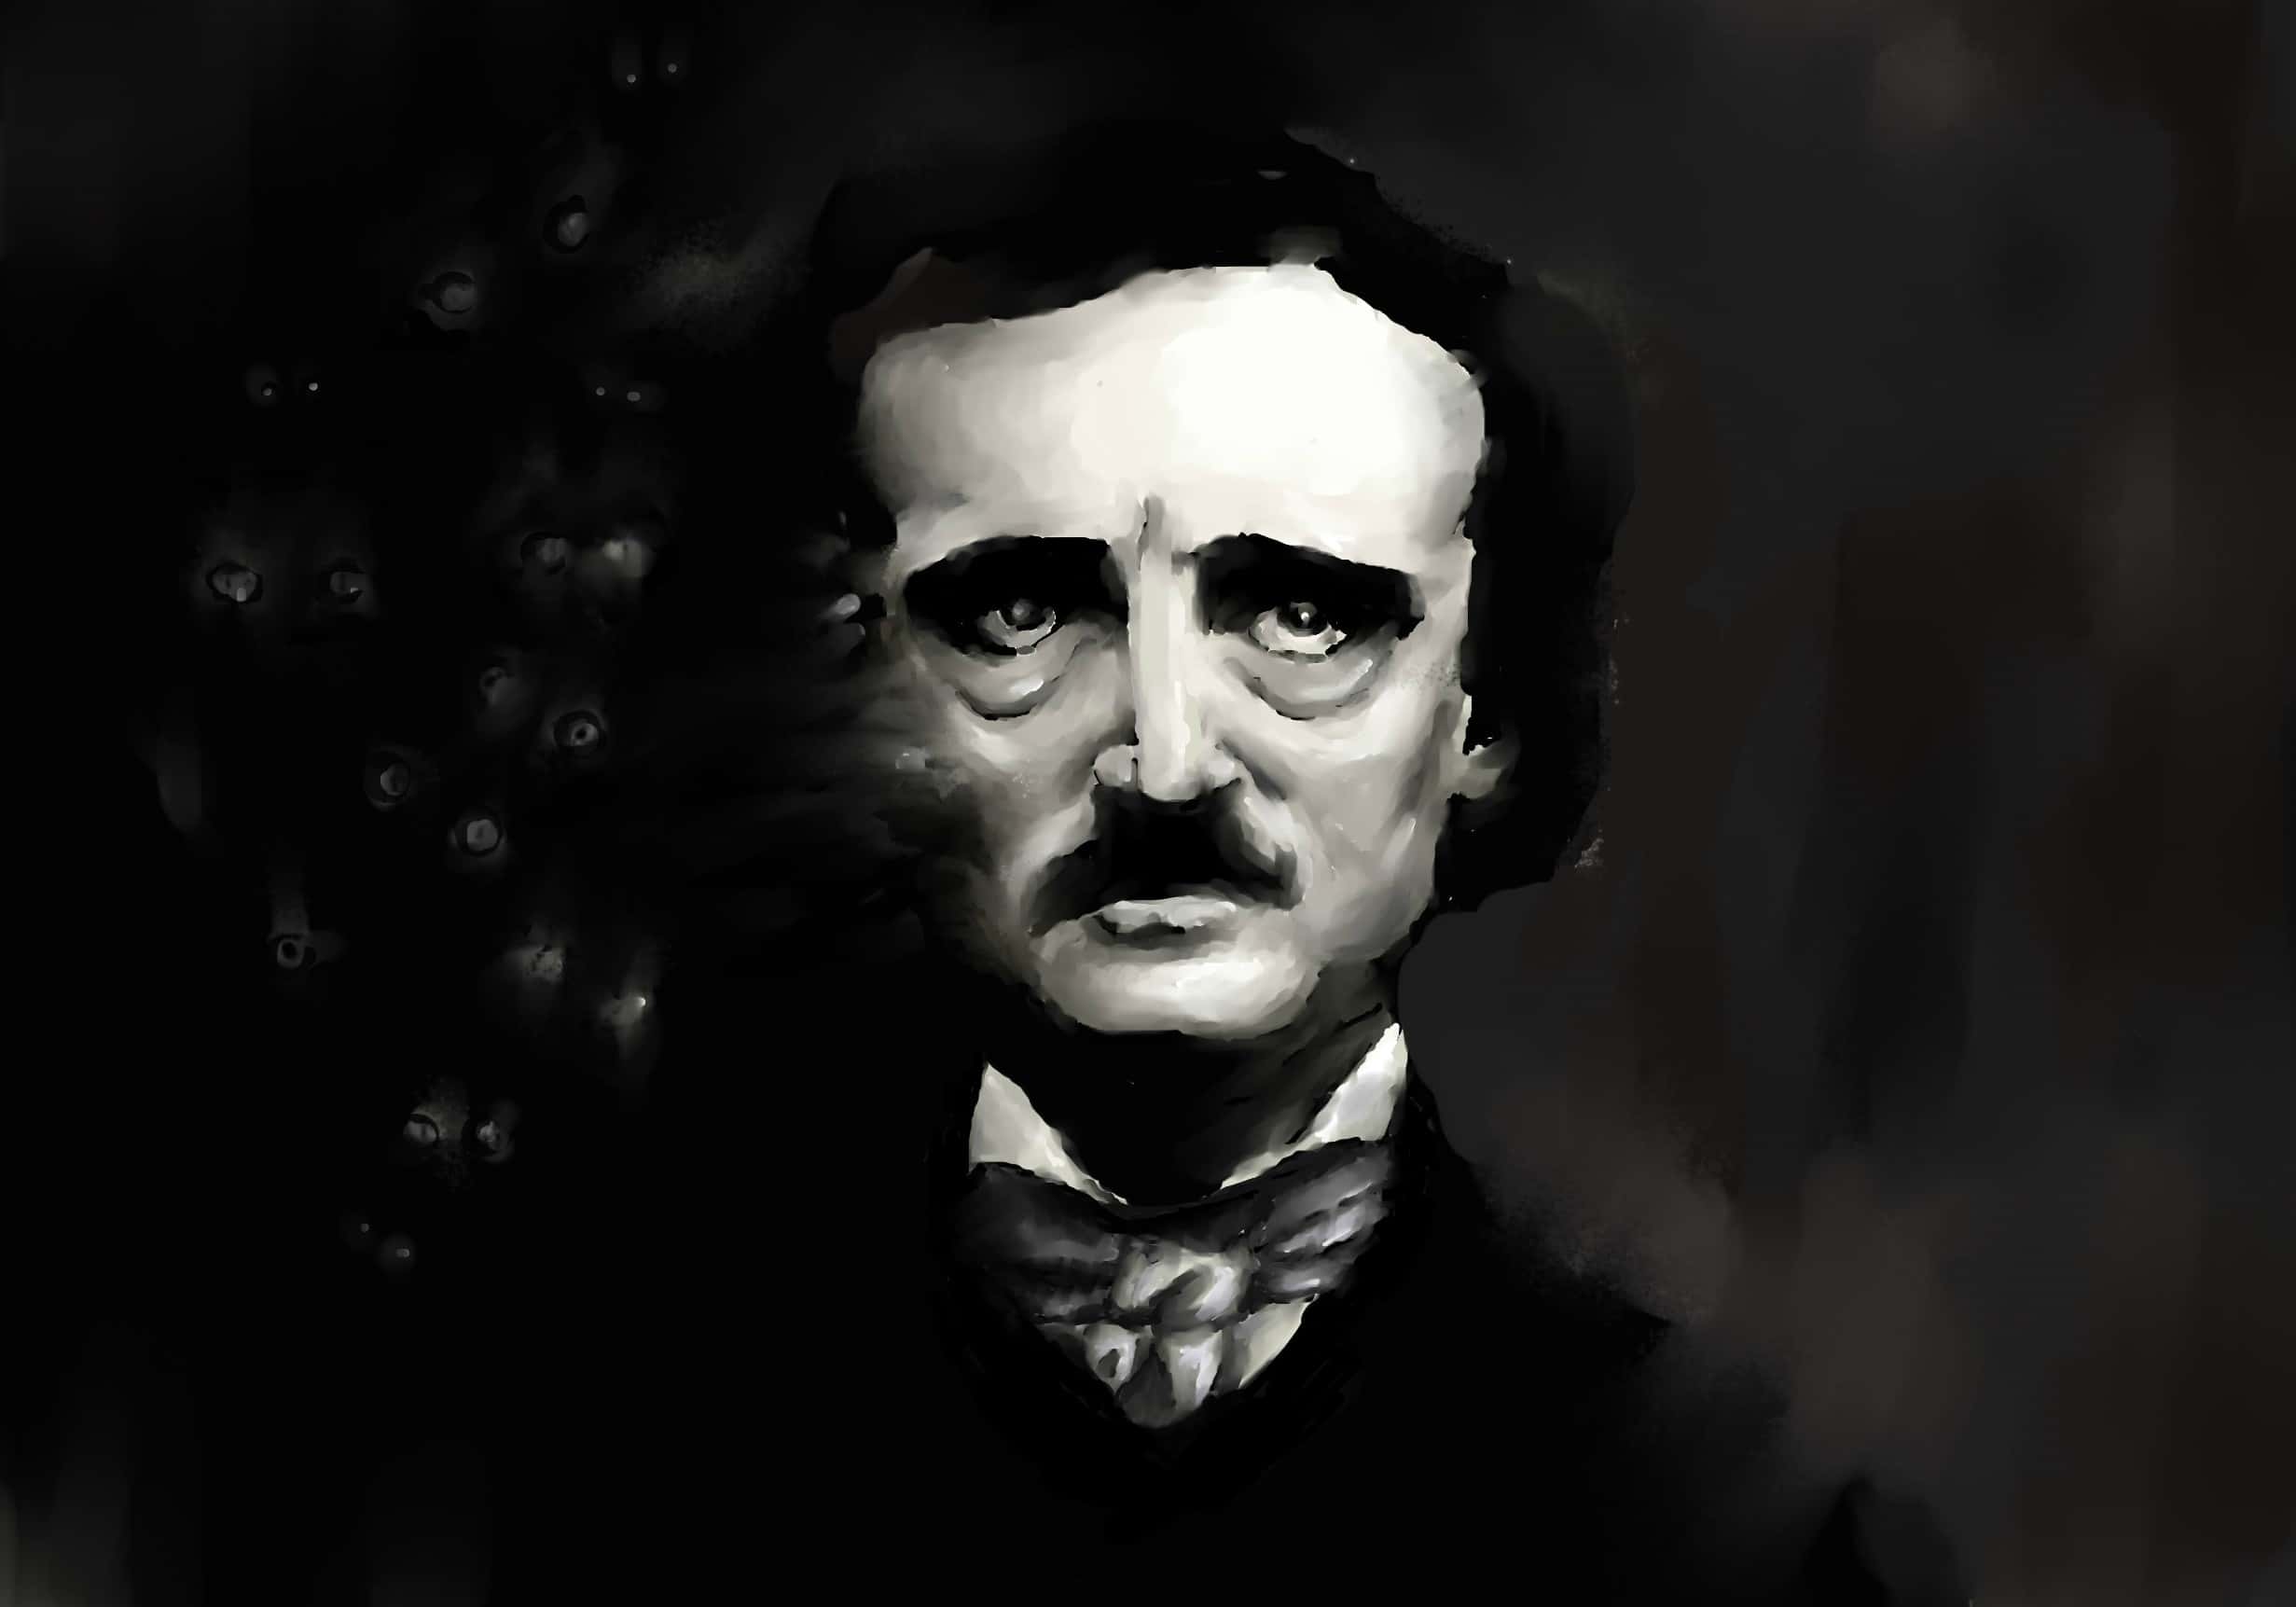 Edgar Allan Poe Facts